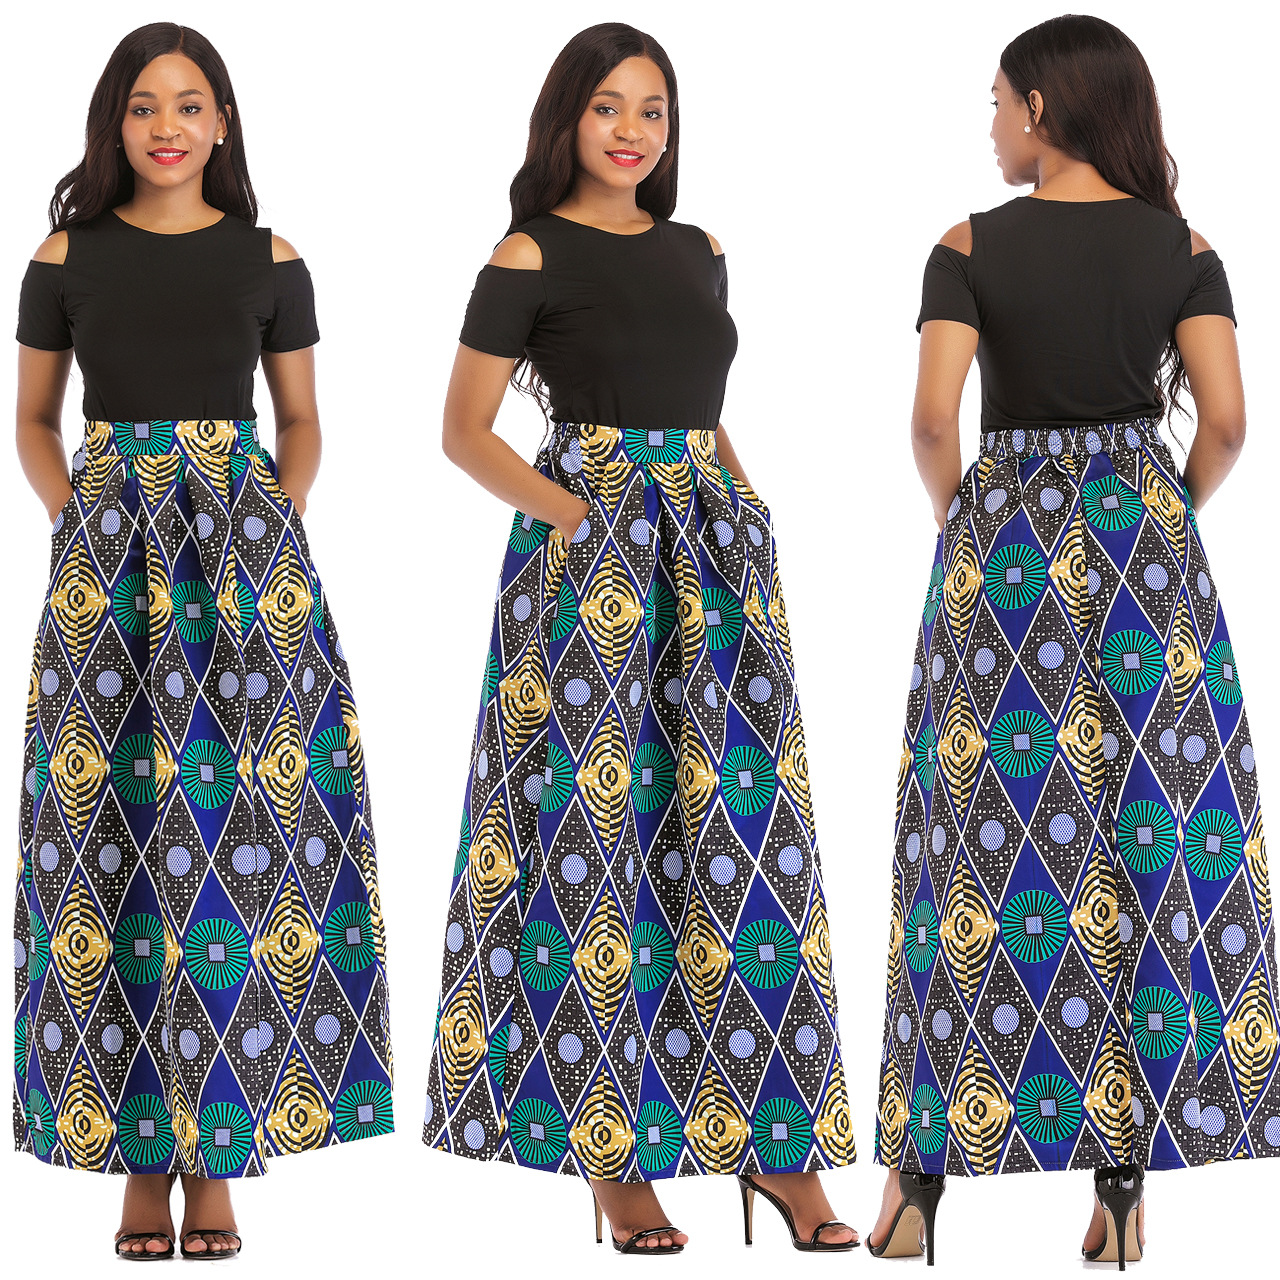 US$ 8.32 - Short sleeved long skirt - www.keke-lover.com